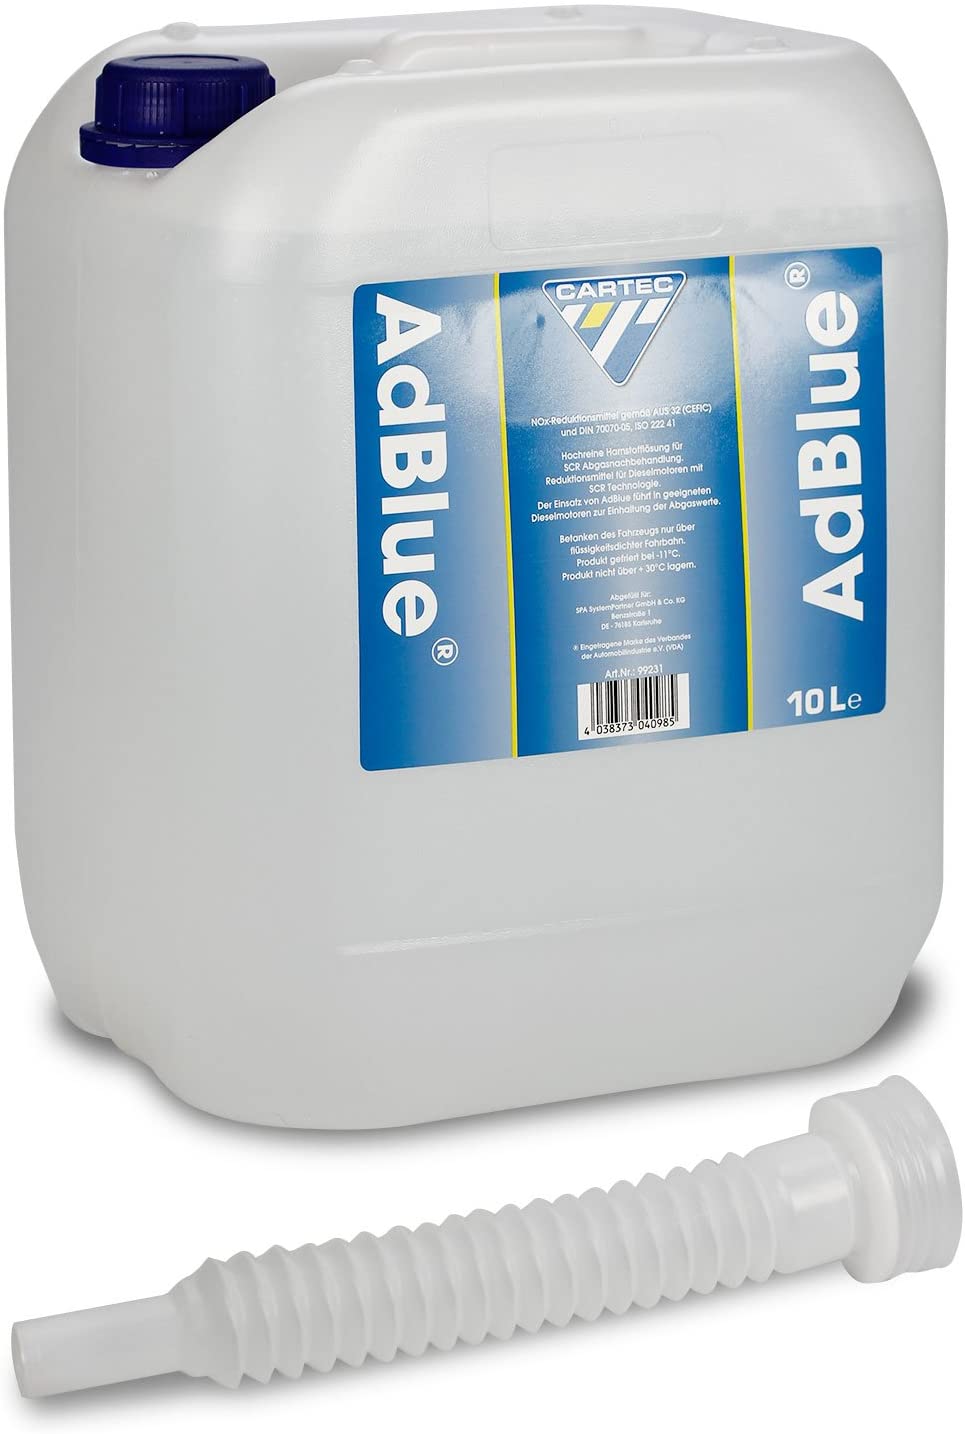 Cartec 99231 AdBlue Urea Extremadamente Pura para el Tratamiento de Los Gases de Escape, 10L Volumen